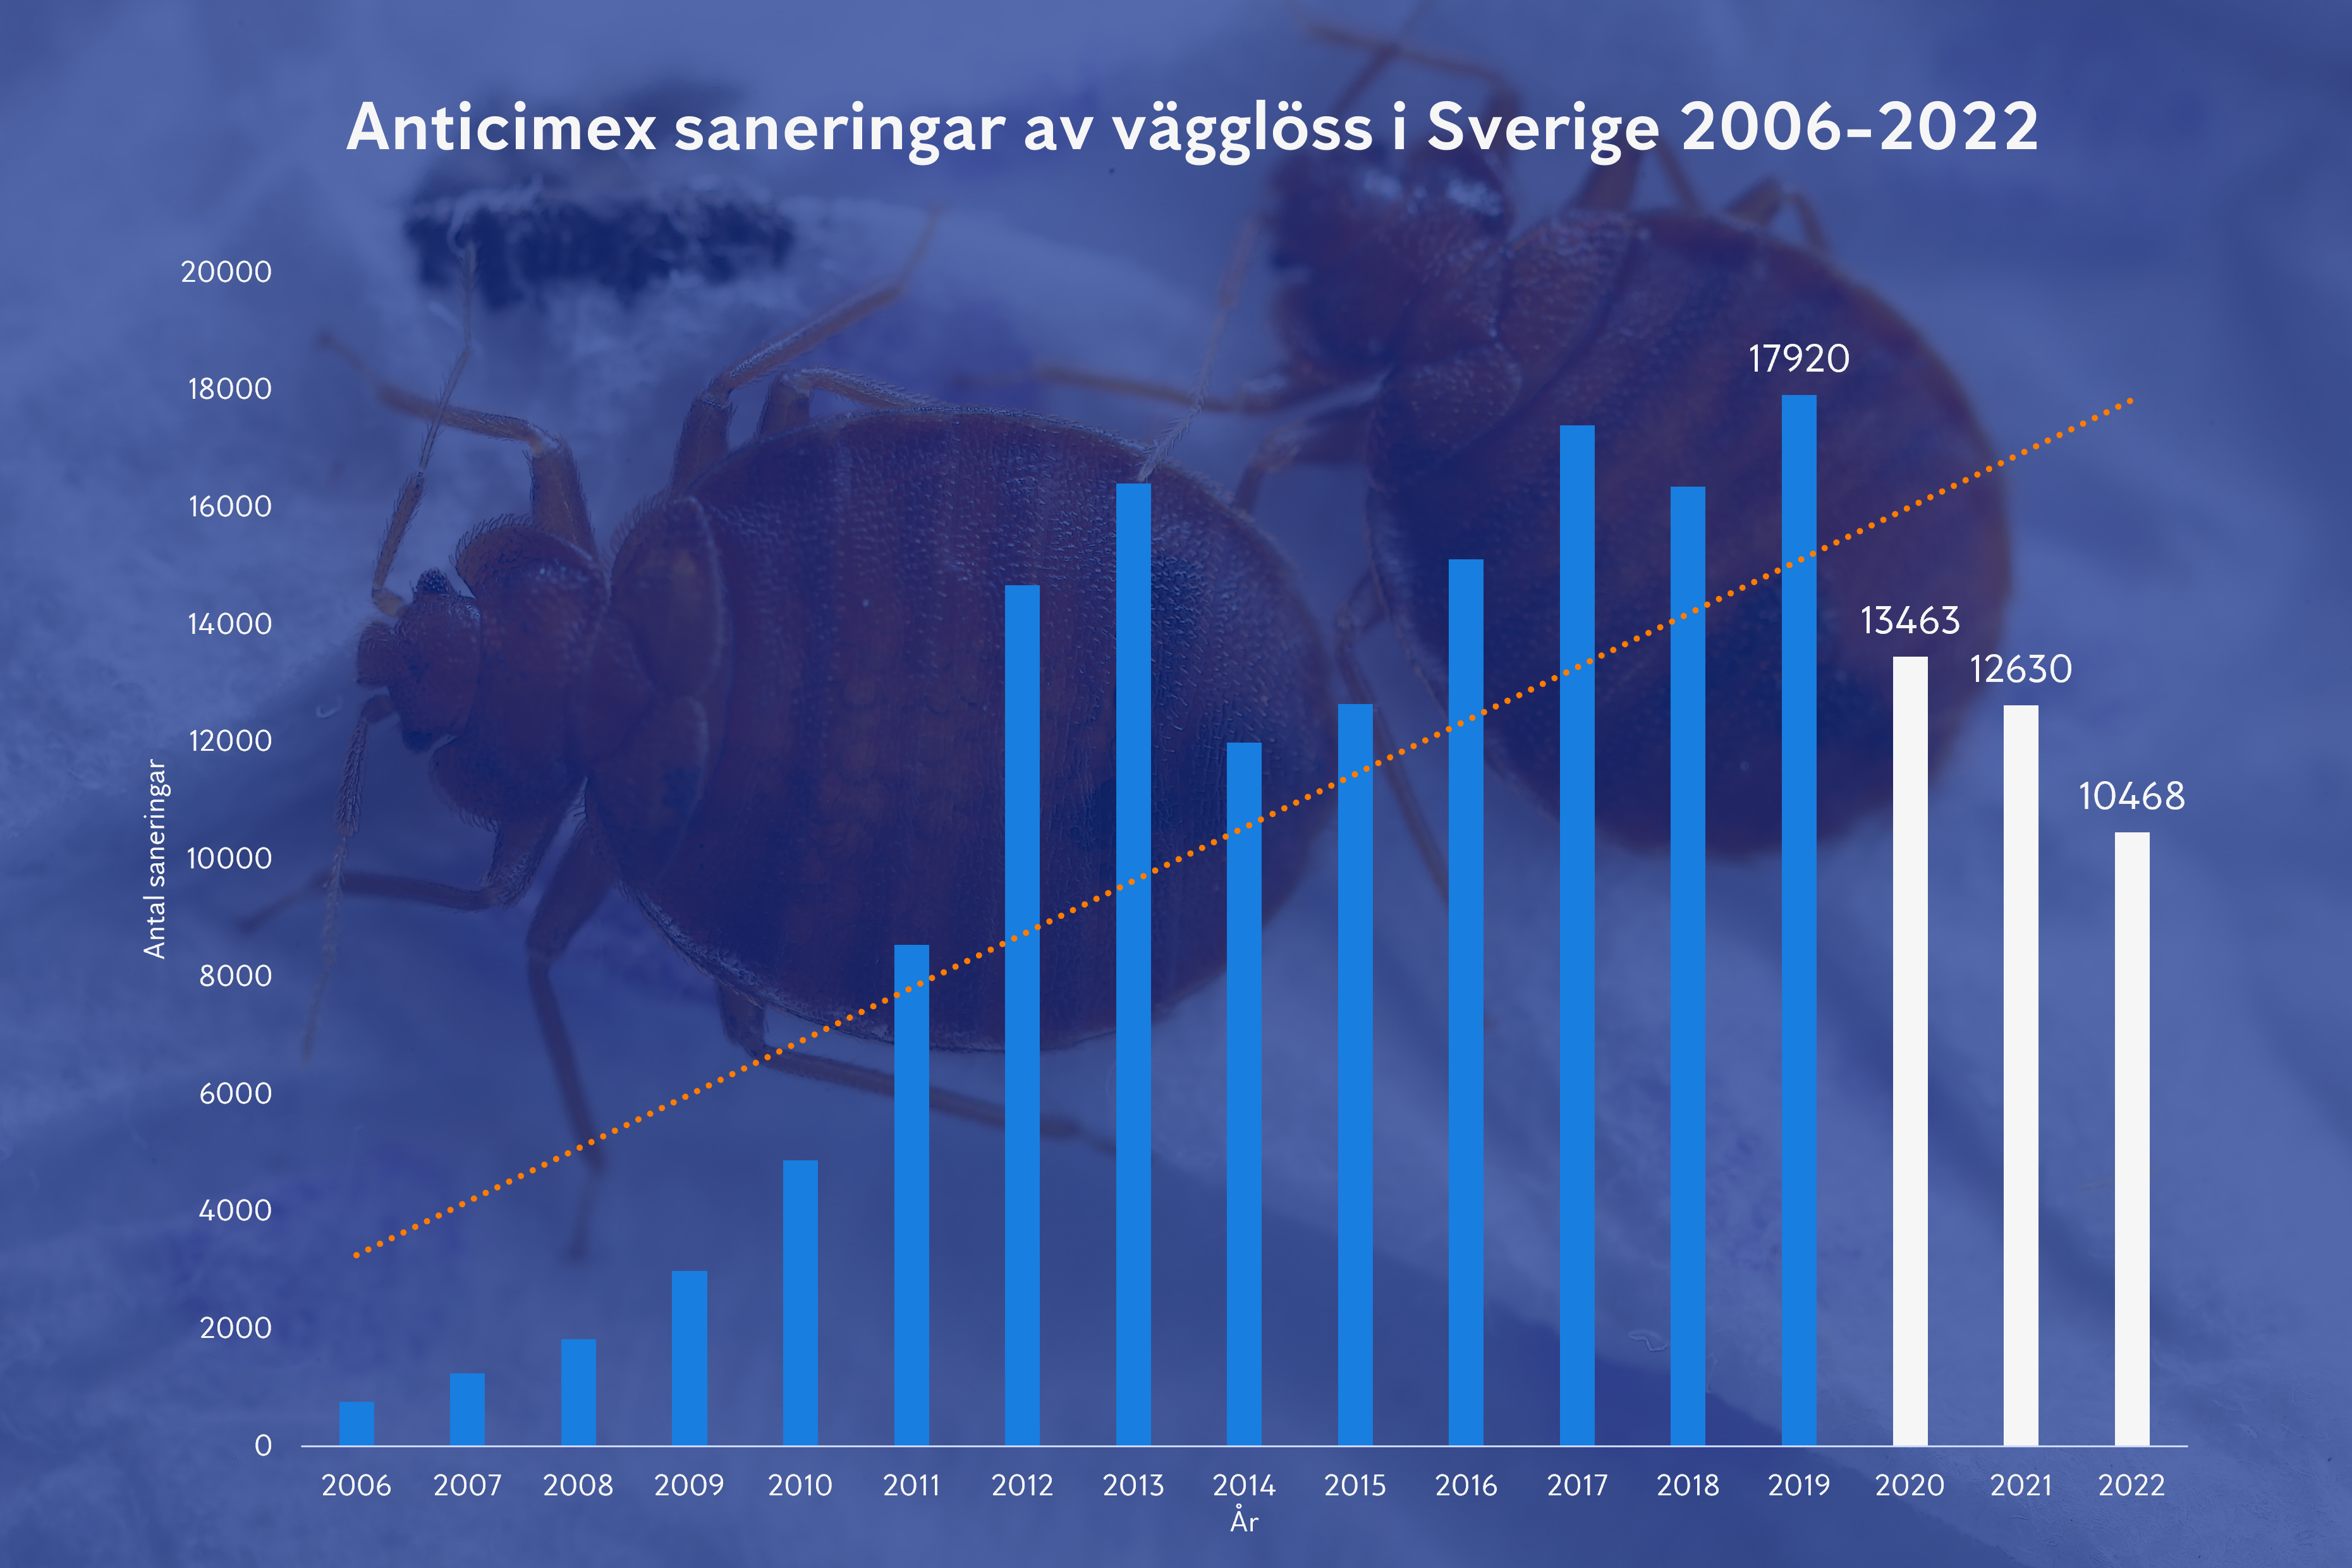 Graf över Anticimex vägglussaneringar i Sverige 2006 till 2022